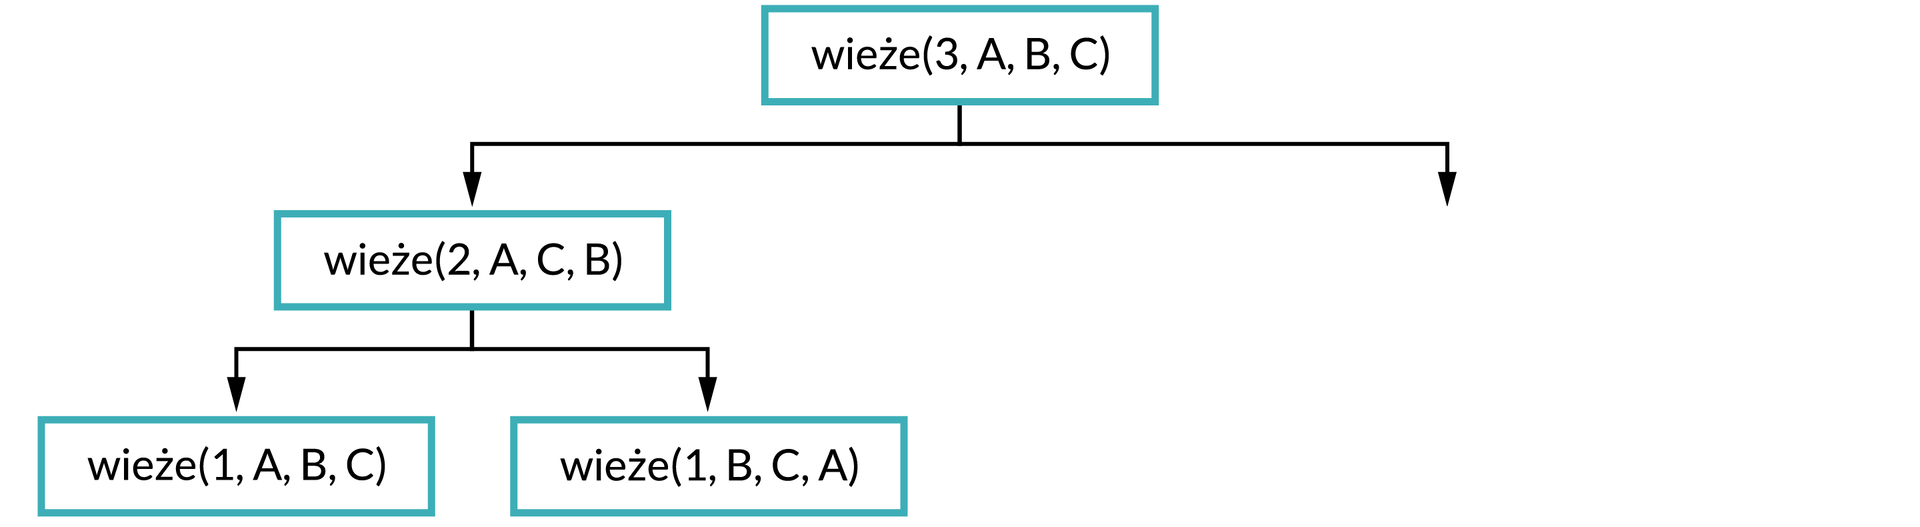 Ilustracja przedstawia schemat. Na górze schematu w prostokątnej ramce jest napis: wieże(3, A, B, C). Od ramki dwie strzałki w dół, pod strzałką po lewej stronie zapis w ramce: wieże(2, A, C, B). Od ramki dwie strzałki w dół, pod strzałką po lewej stronie zapis w ramce: wieże(1, A, B, C), pod strzałką po prawej stronie wieże(1, B, C, A).  